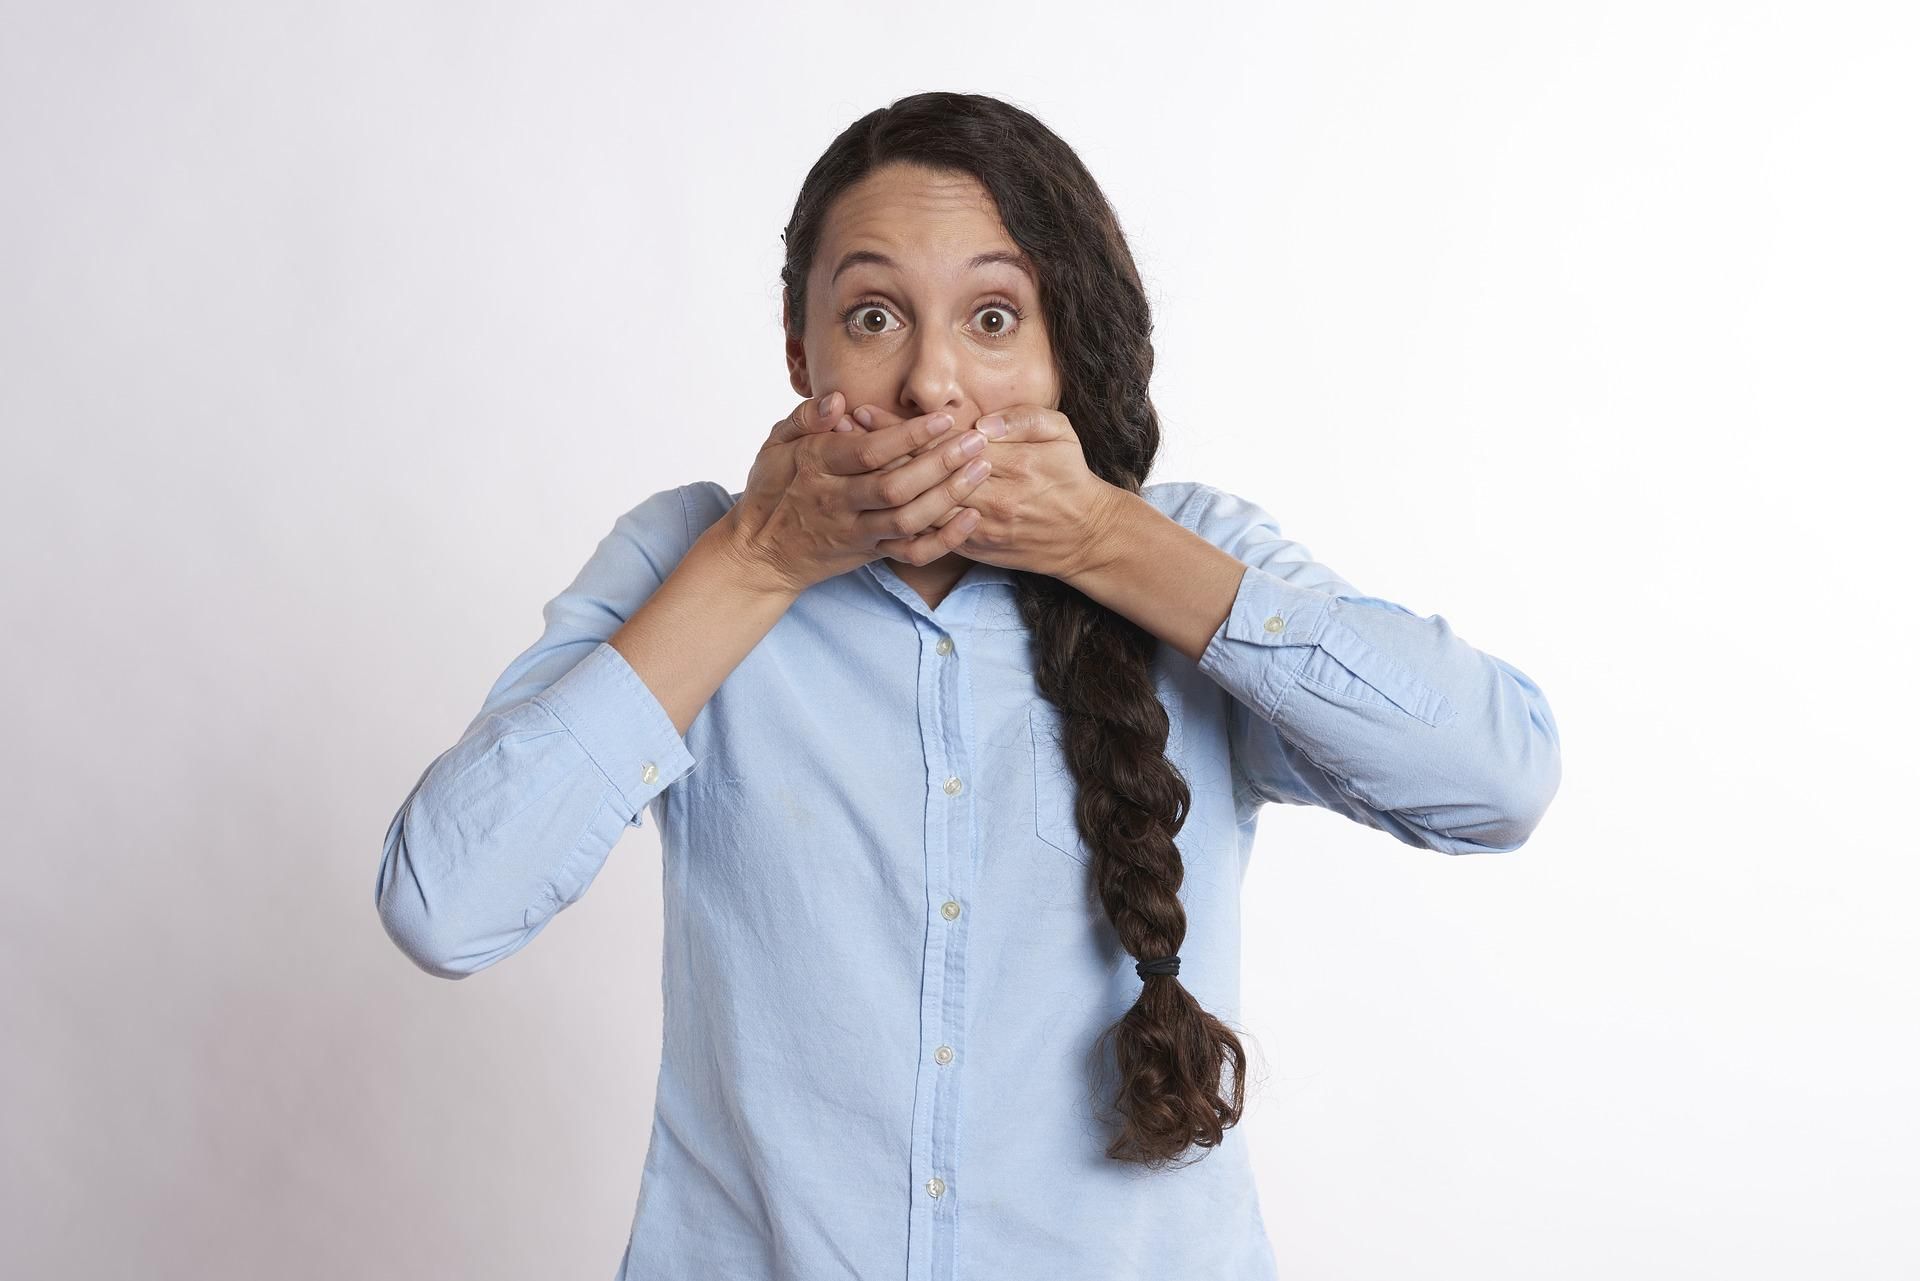 Язык – враг твой: 10 ситуаций, когда лучше промолчать